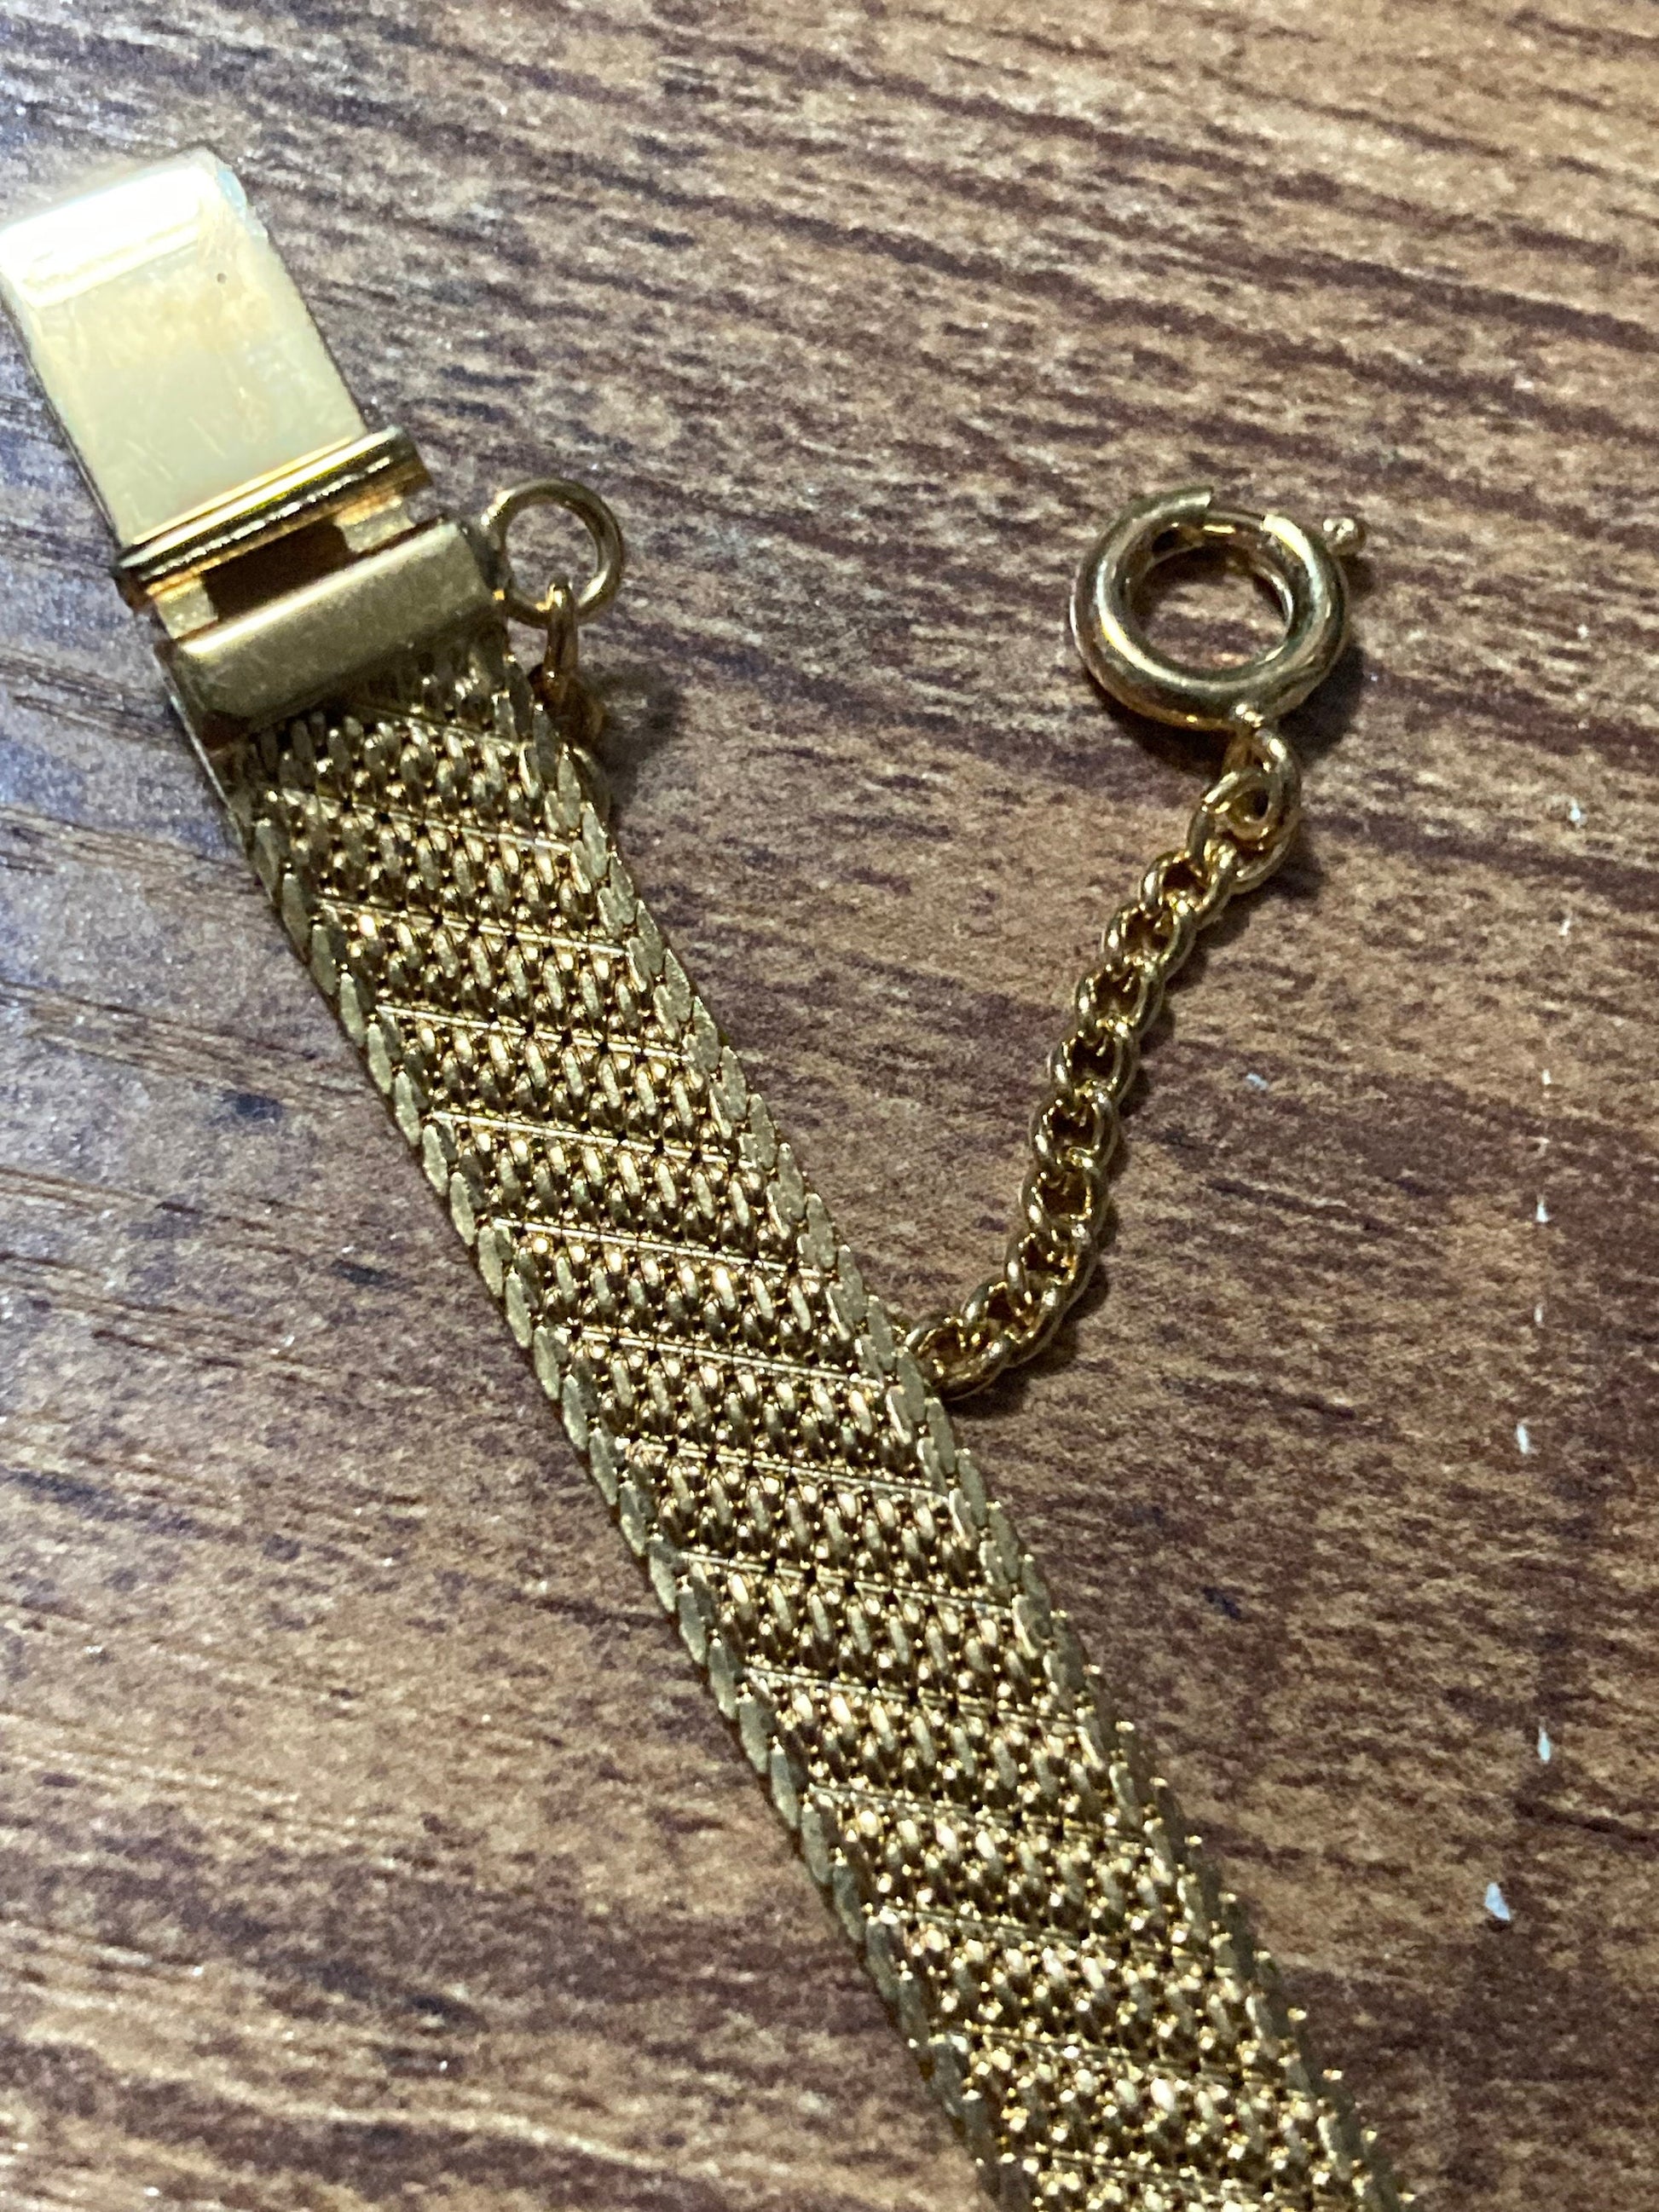 True Vintage pristine gold plated wide mesh flat link bangle bracelet 19 x 8mm old shop stock